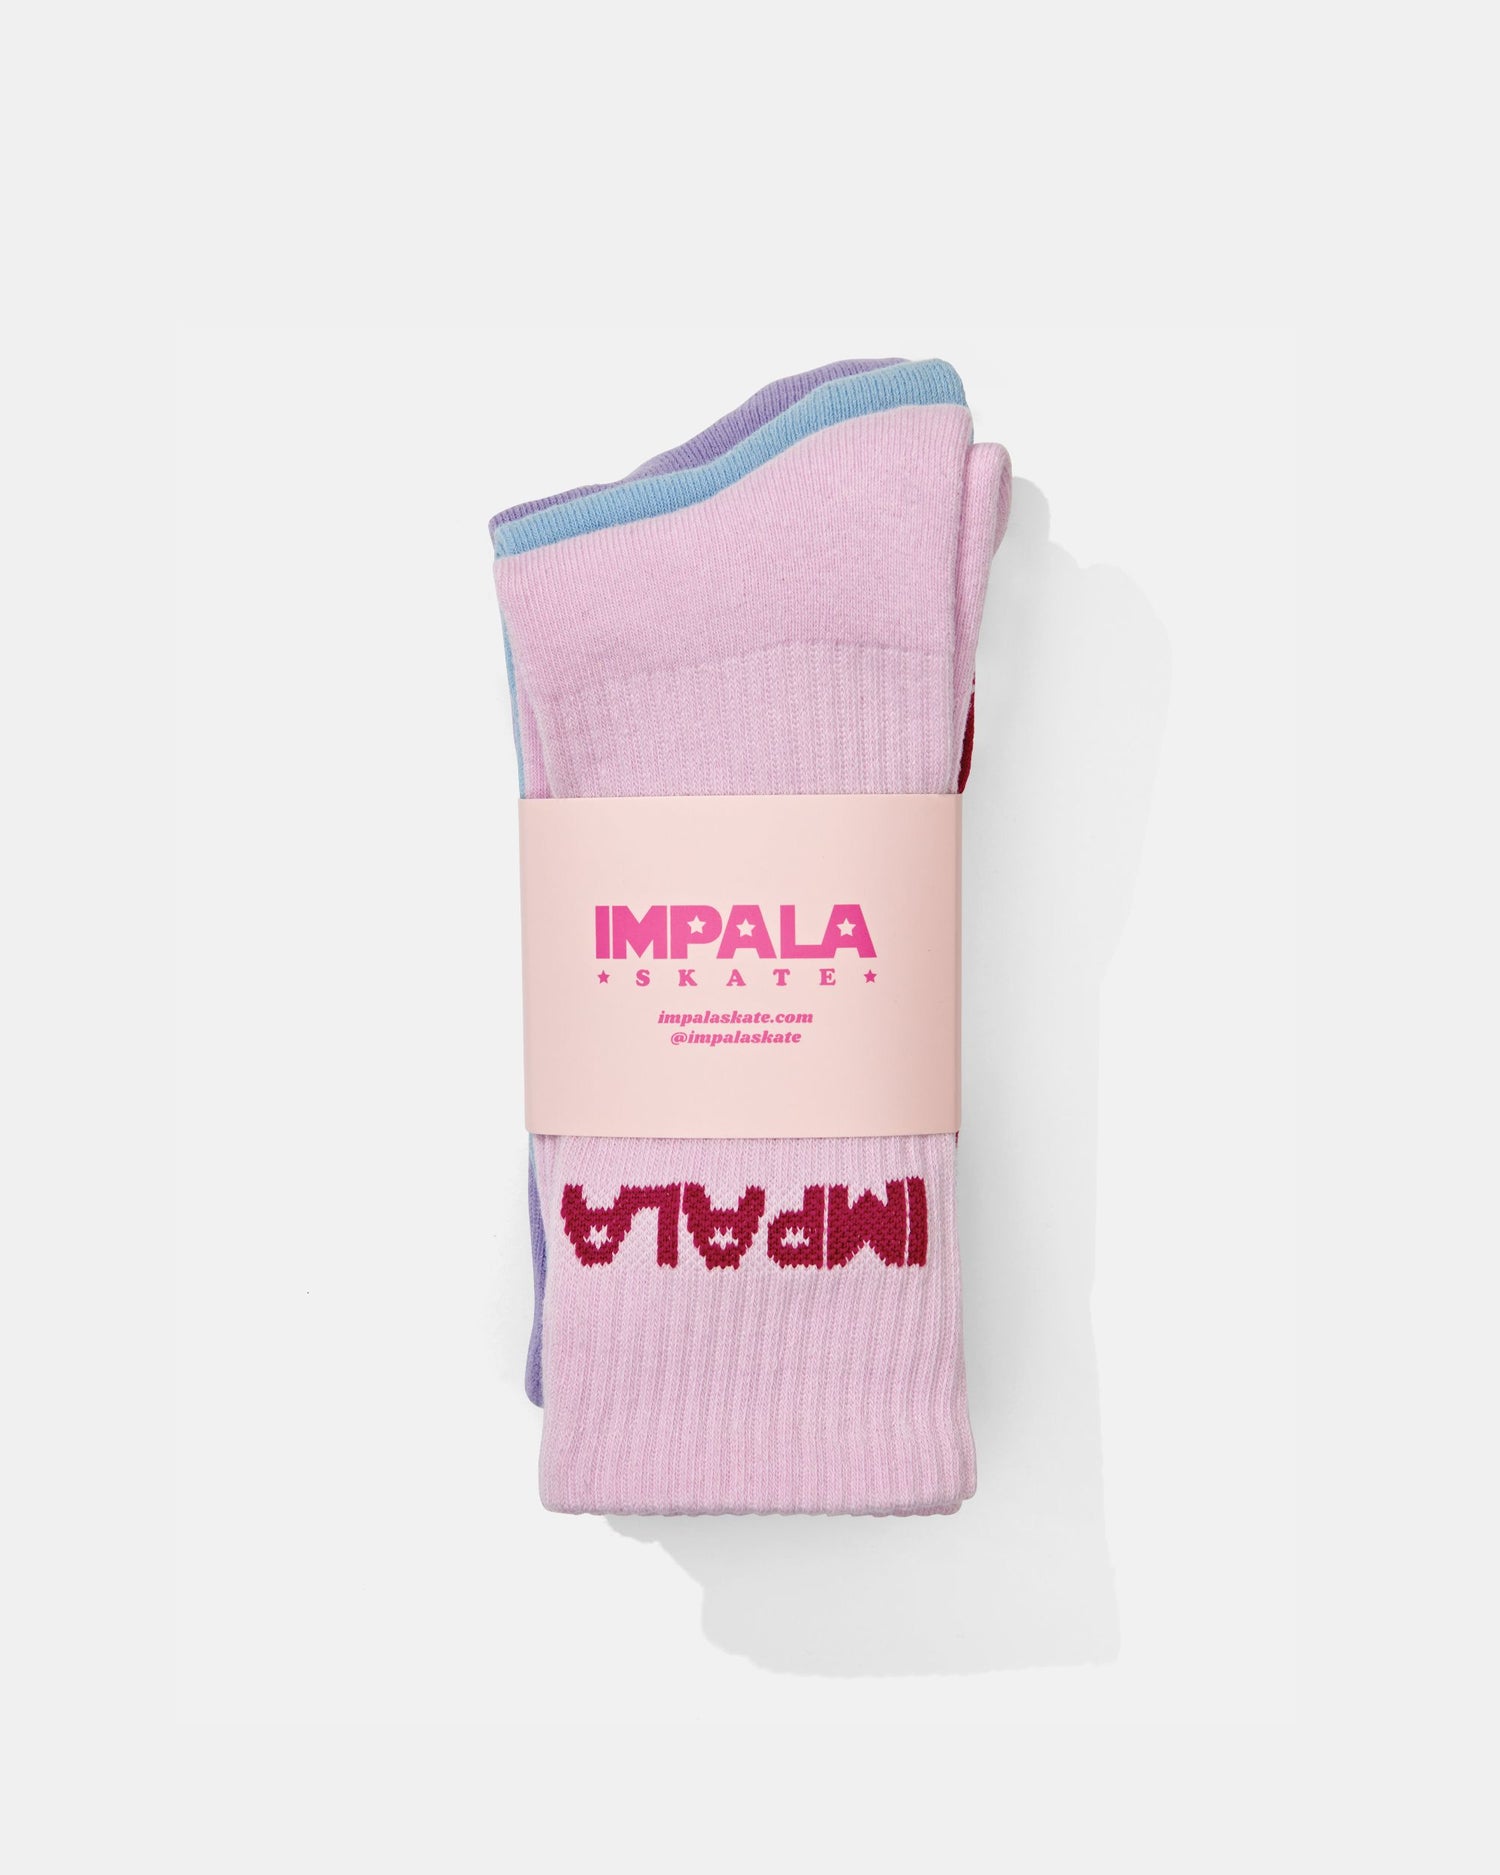 Impala Skate Socks 3-Pack - Impala Skate